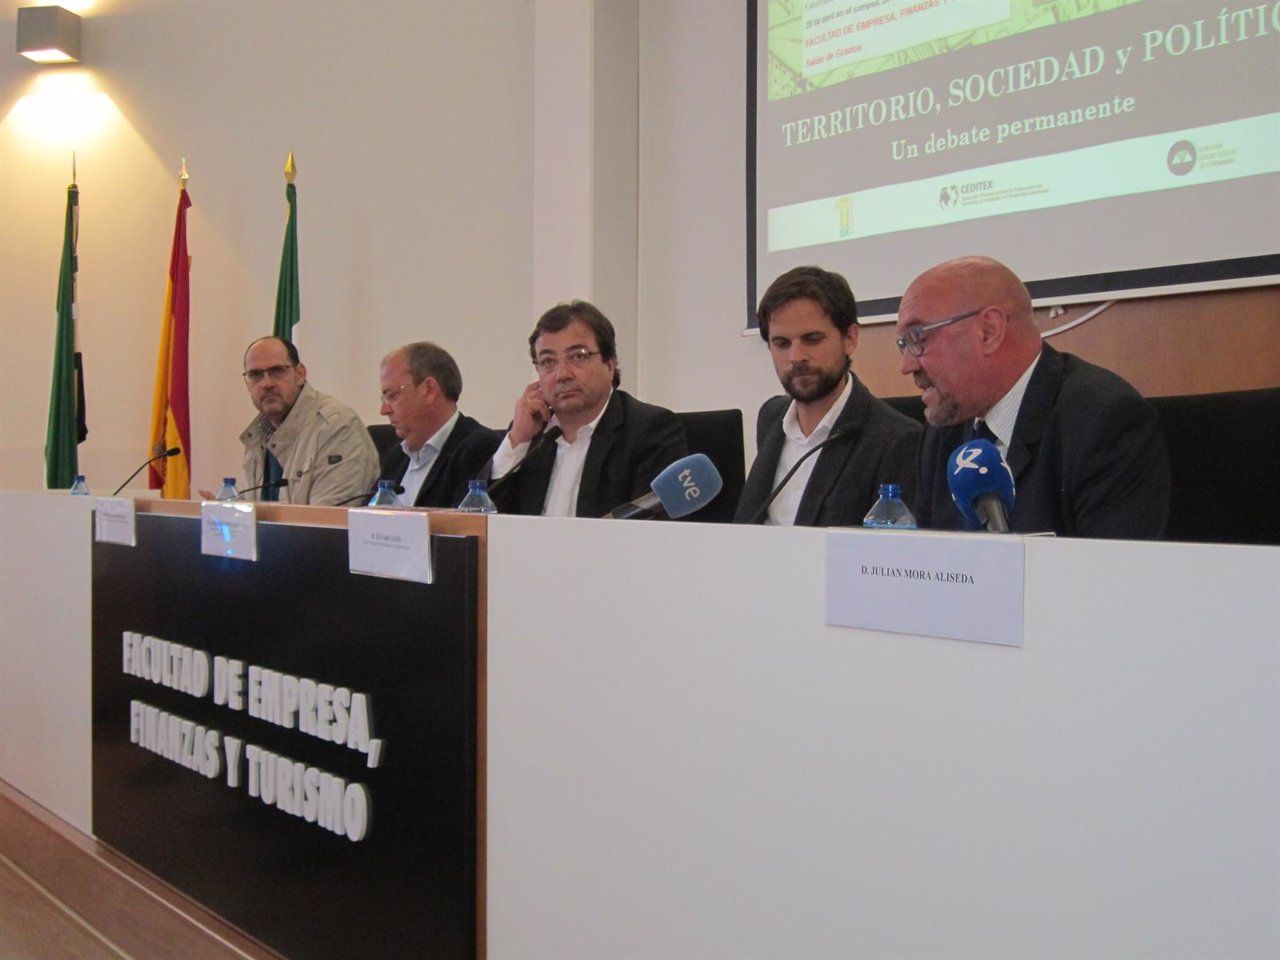 Debate sobre políticas territoriales en la UEx en Cáceres